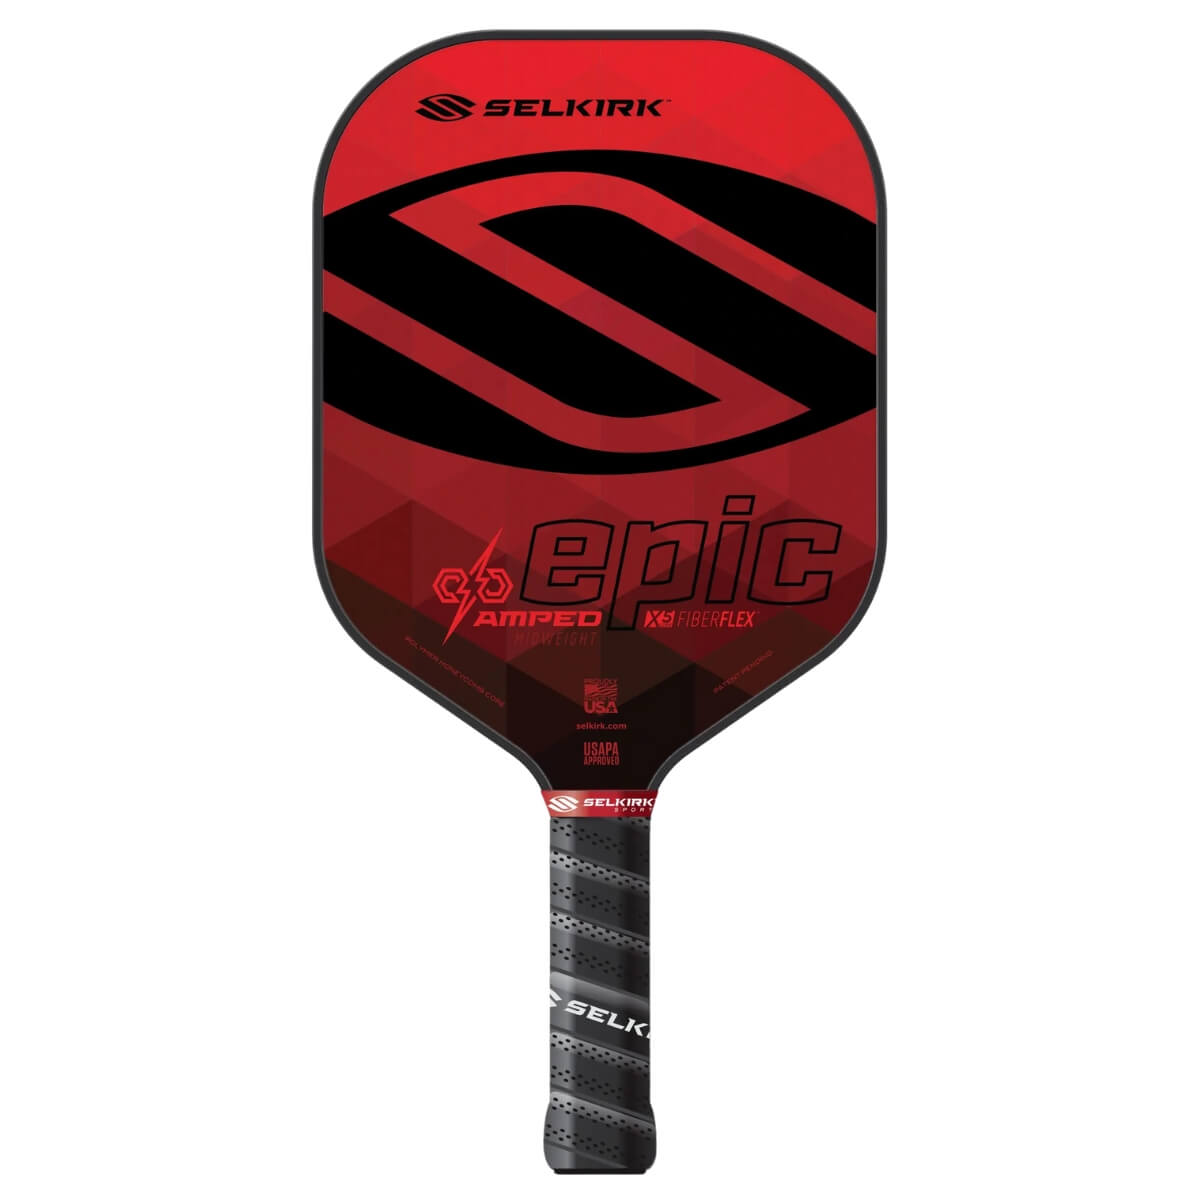 Selkirk Amped Epic paddle / racket Selkirk Red